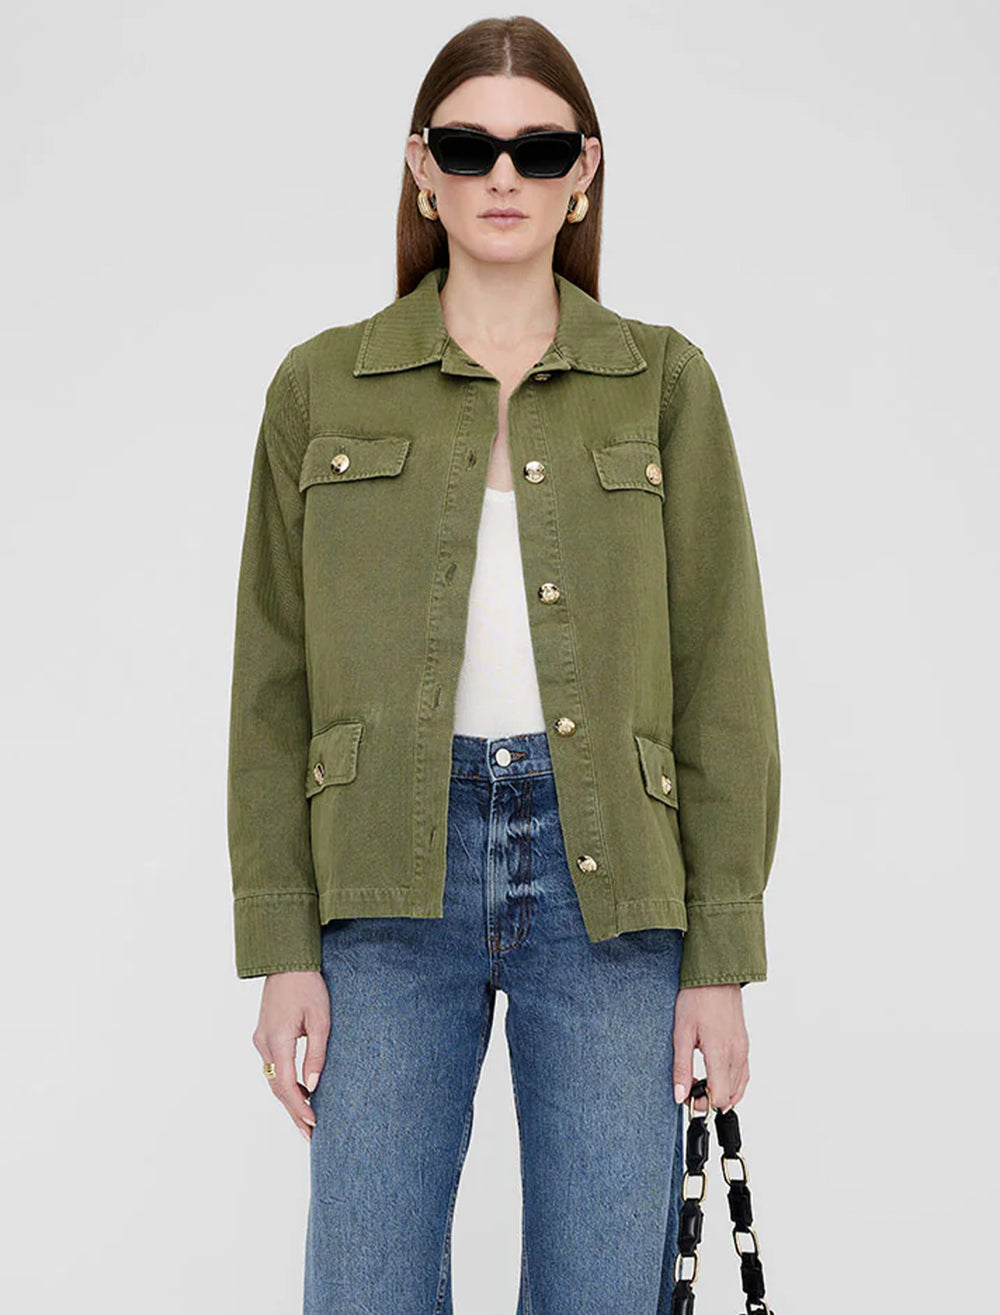 Model wearing Anine Bing's corey jacket in army green.